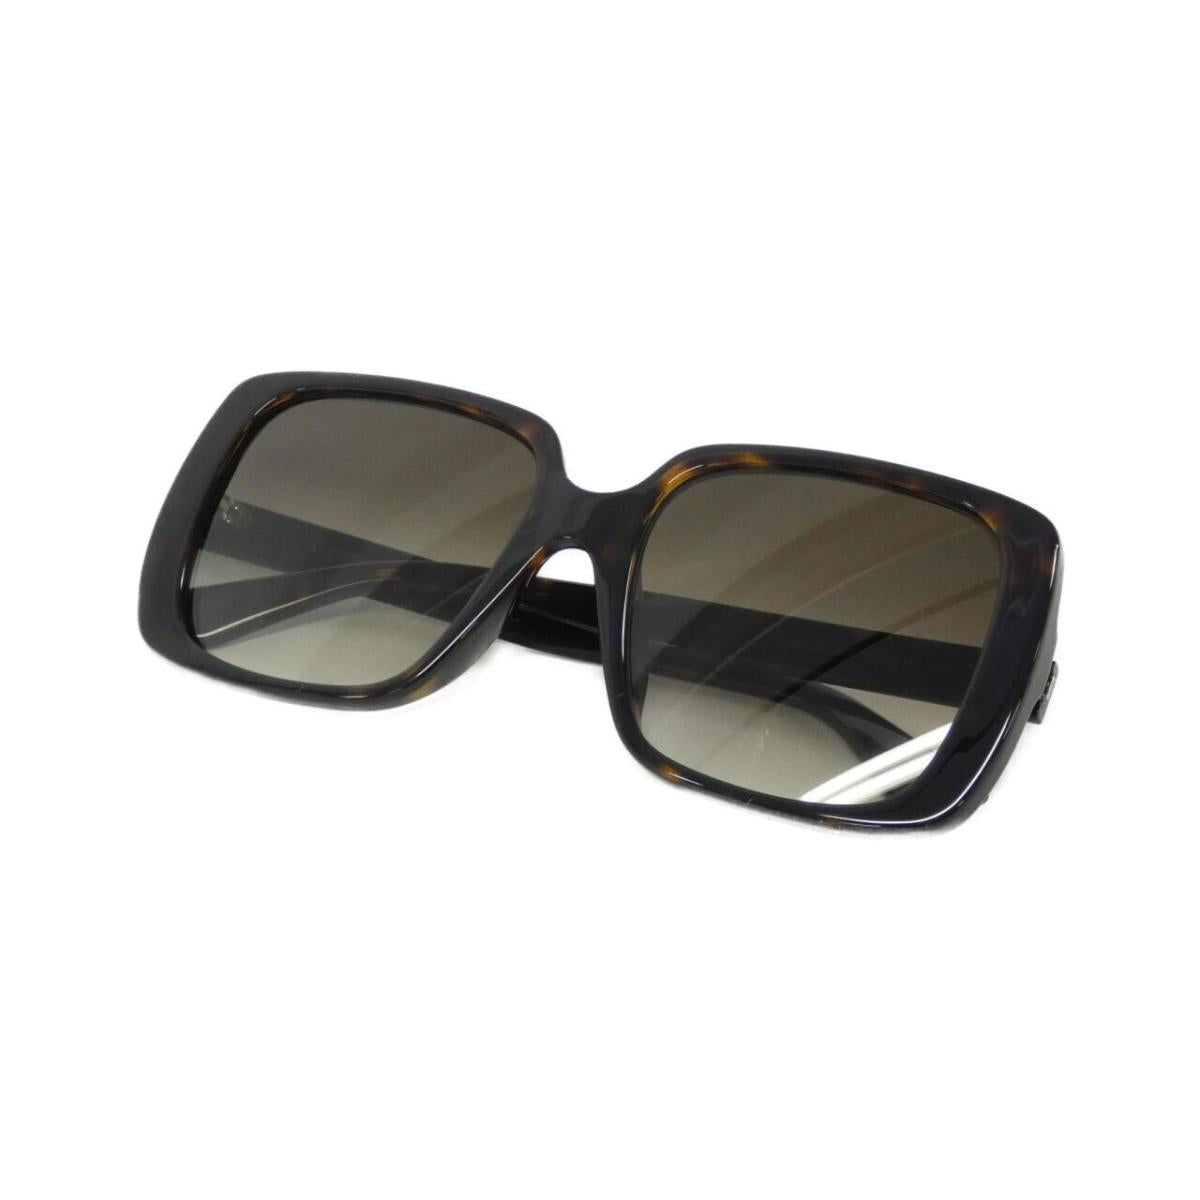 Gucci 0632SA   Sun Glasses